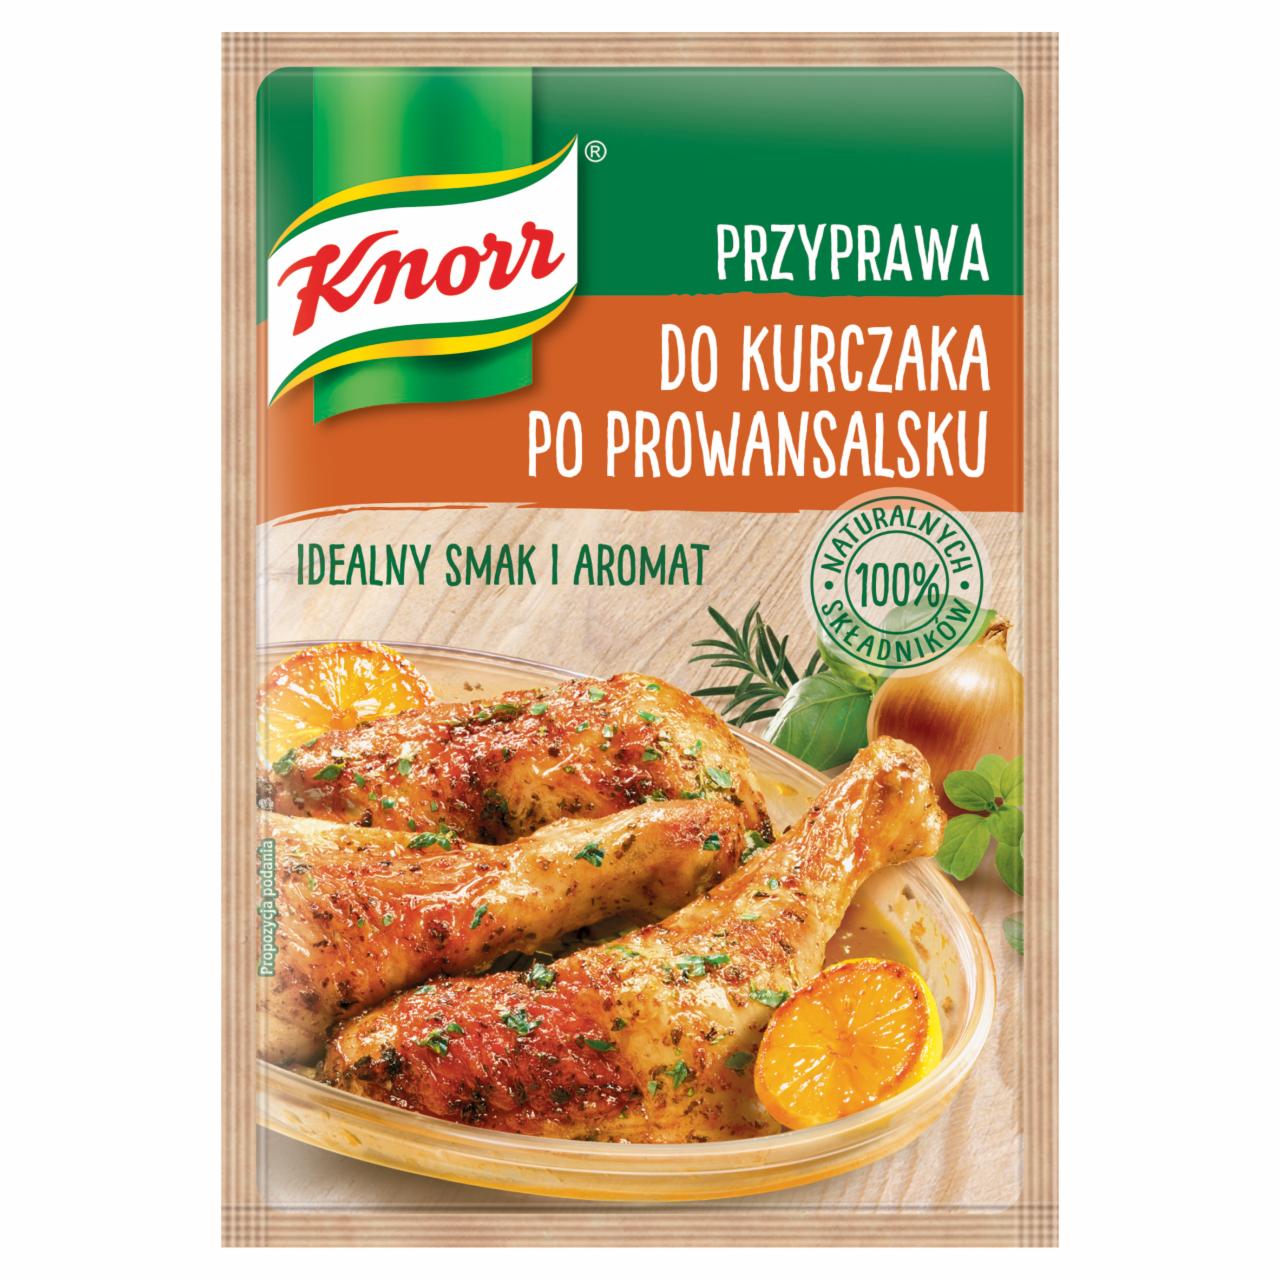 Zdjęcia - Knorr Przyprawa do kurczaka po prowansalsku 23 g